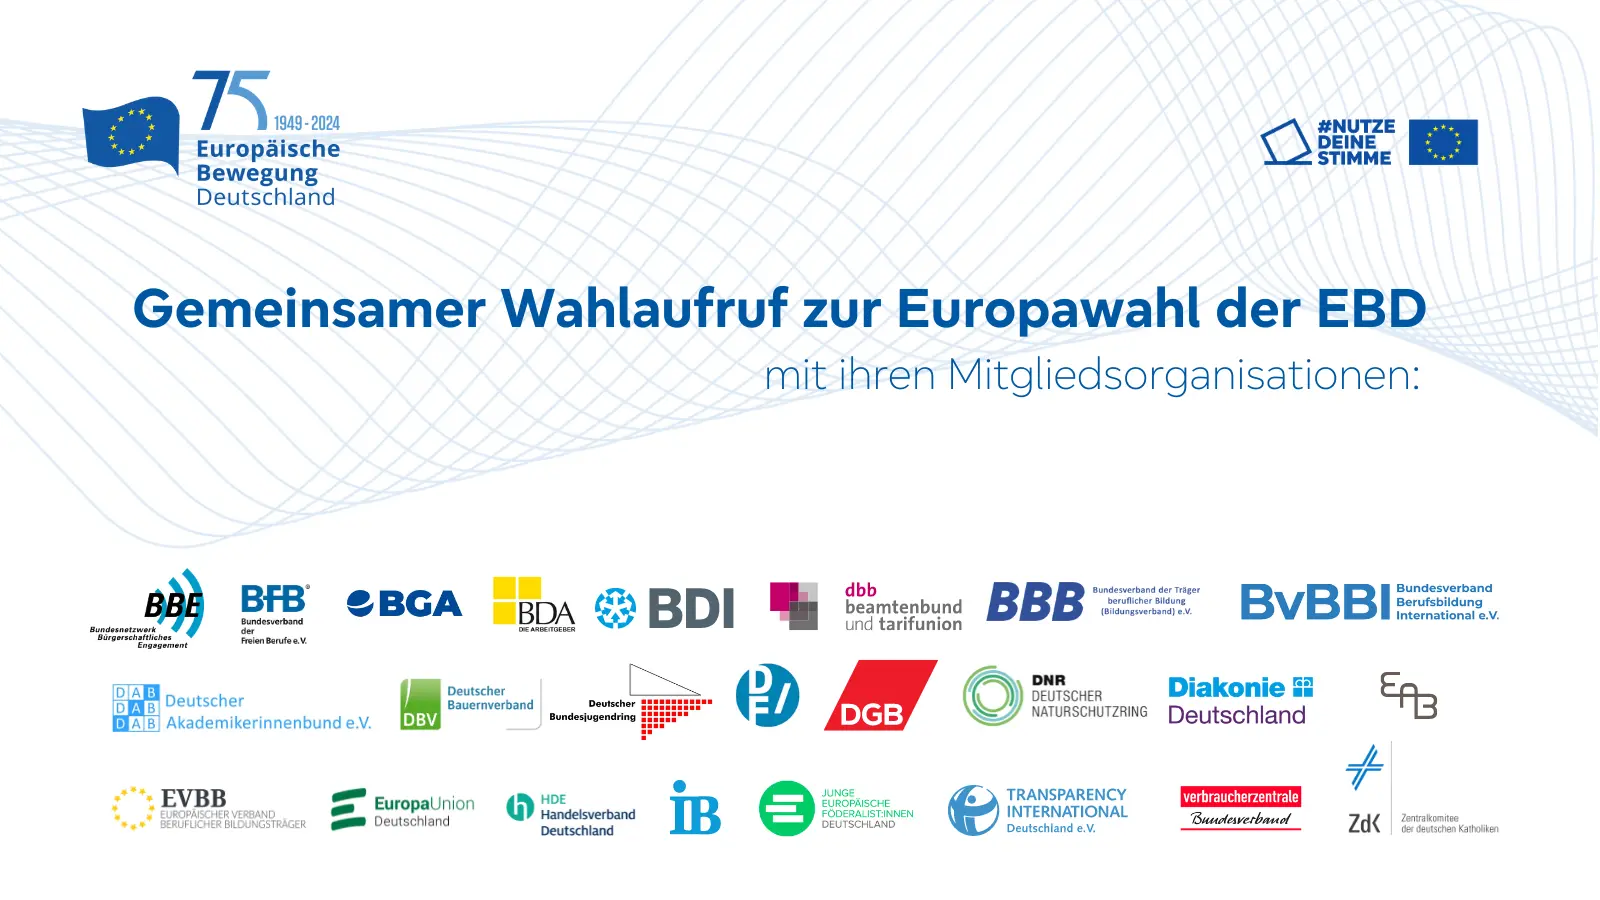 Im Zentrum des Bildes steht groß 'Gemeinsamer Wahlaufruf zur Europawhal der EBD mit ihren Mitgliedsorganisationen'. Darunter sind ca. zwei Dutzend Logos der Organisationen abgebildet.